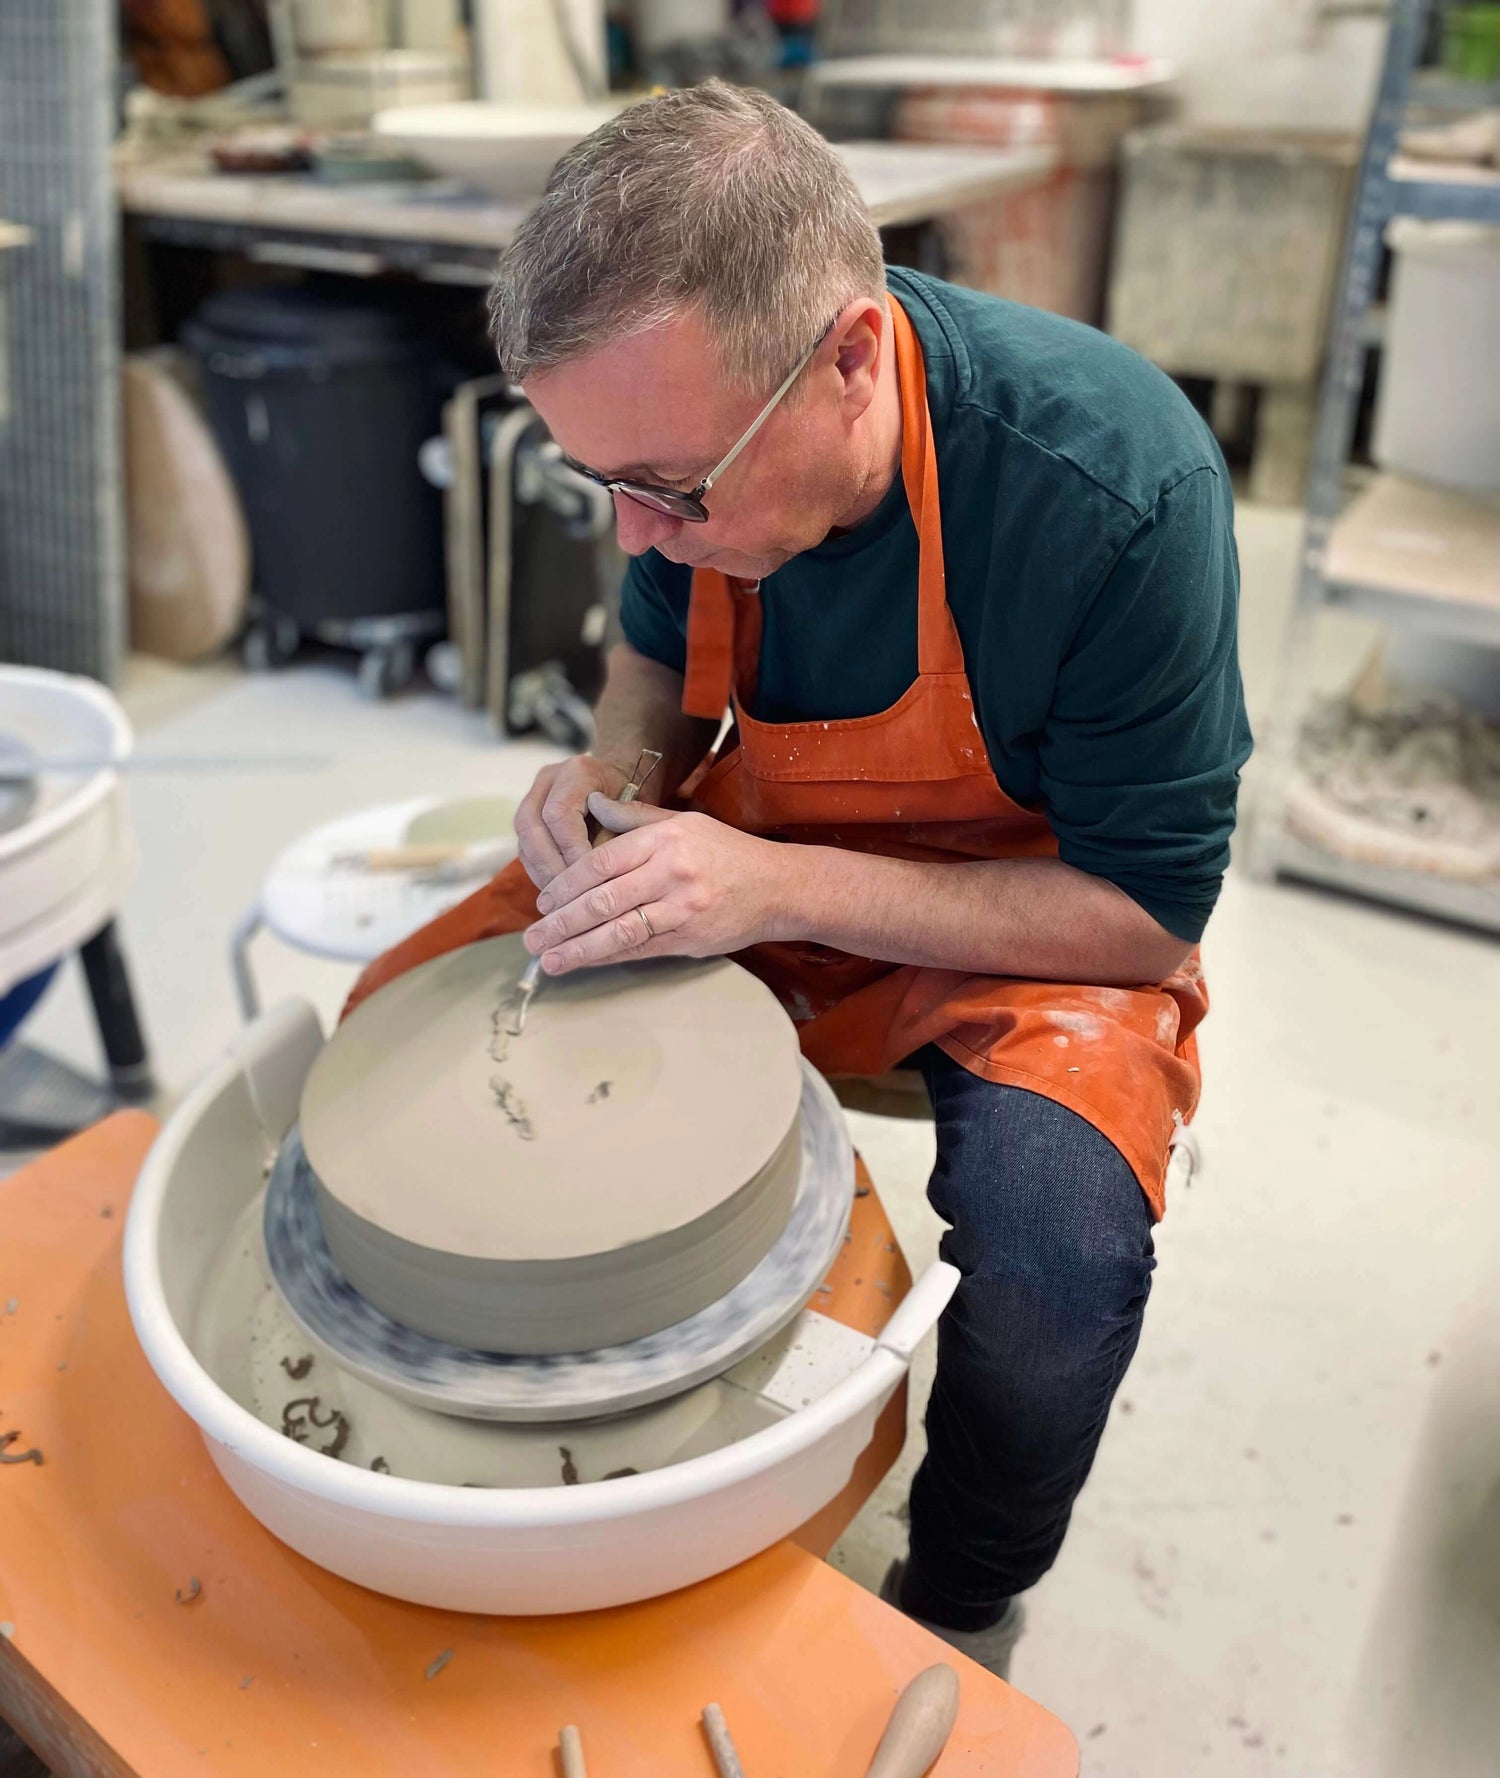 Notre céramiste réalise un plat unique en céramique avec son tour et ses outils dans l'atelier à Fosses-la-ville. 